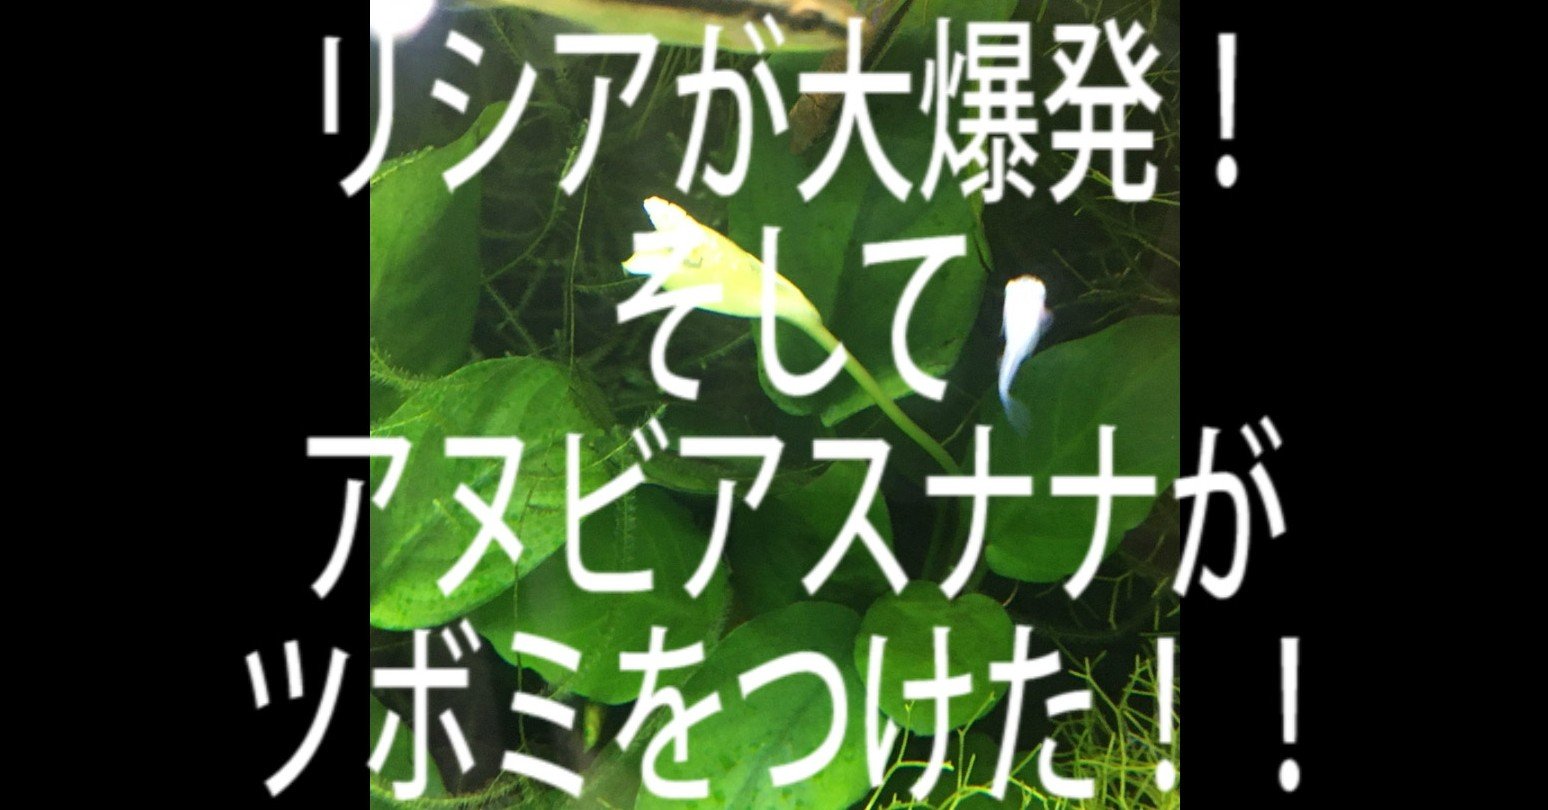 アヌビアスナナがつぼみ 花 をつけた 緑に映える真っ白な水中花です Yasu Note